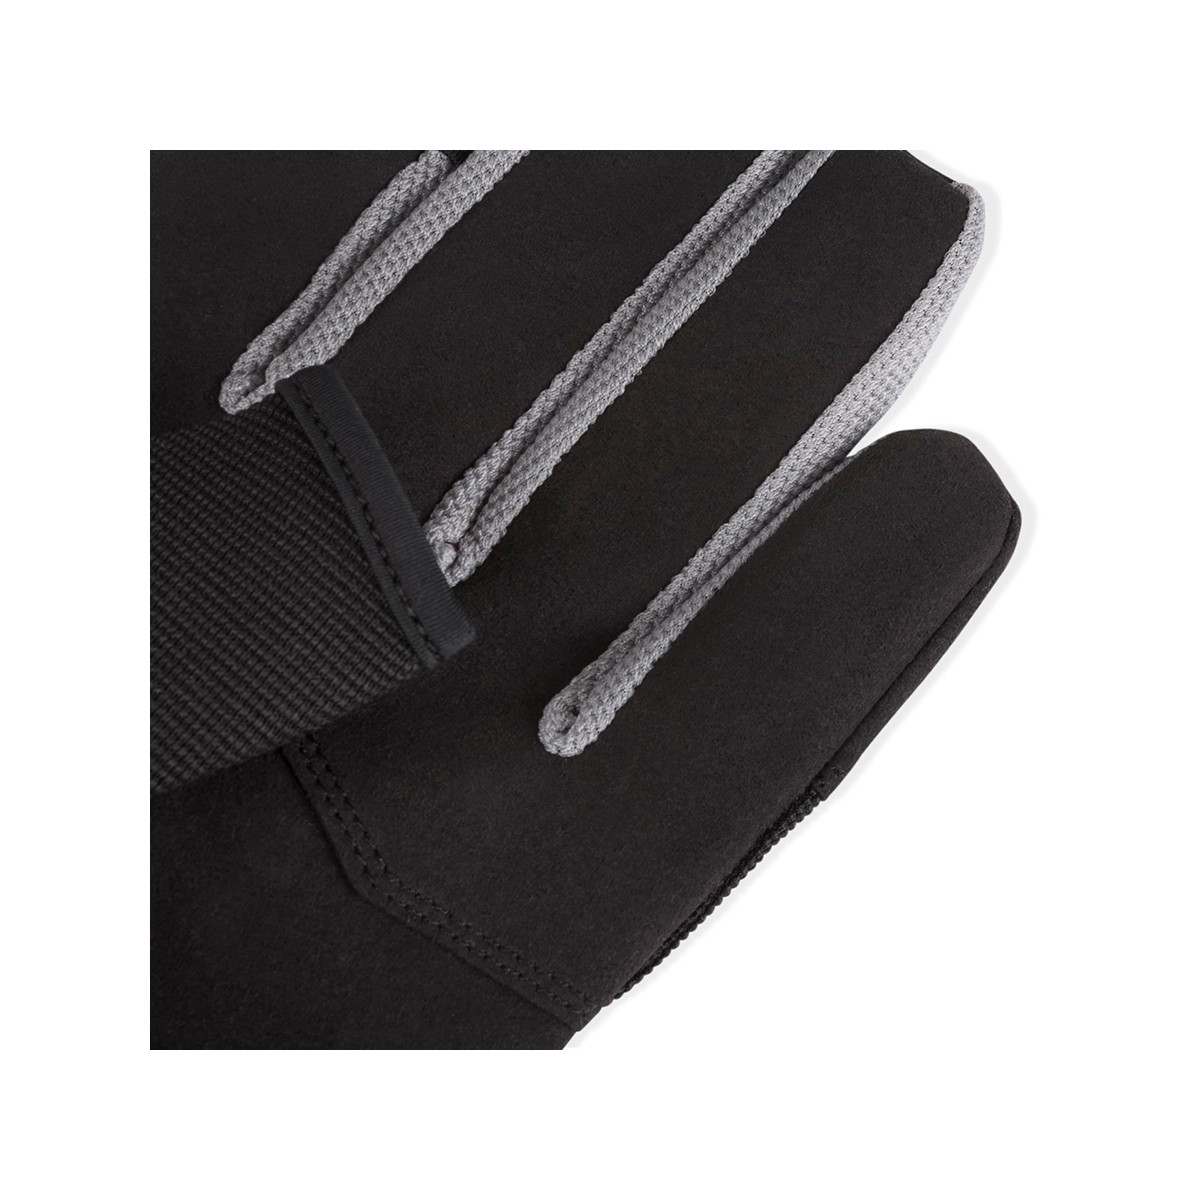 Musto Essential gants de voile longs doigts noirs, taille M